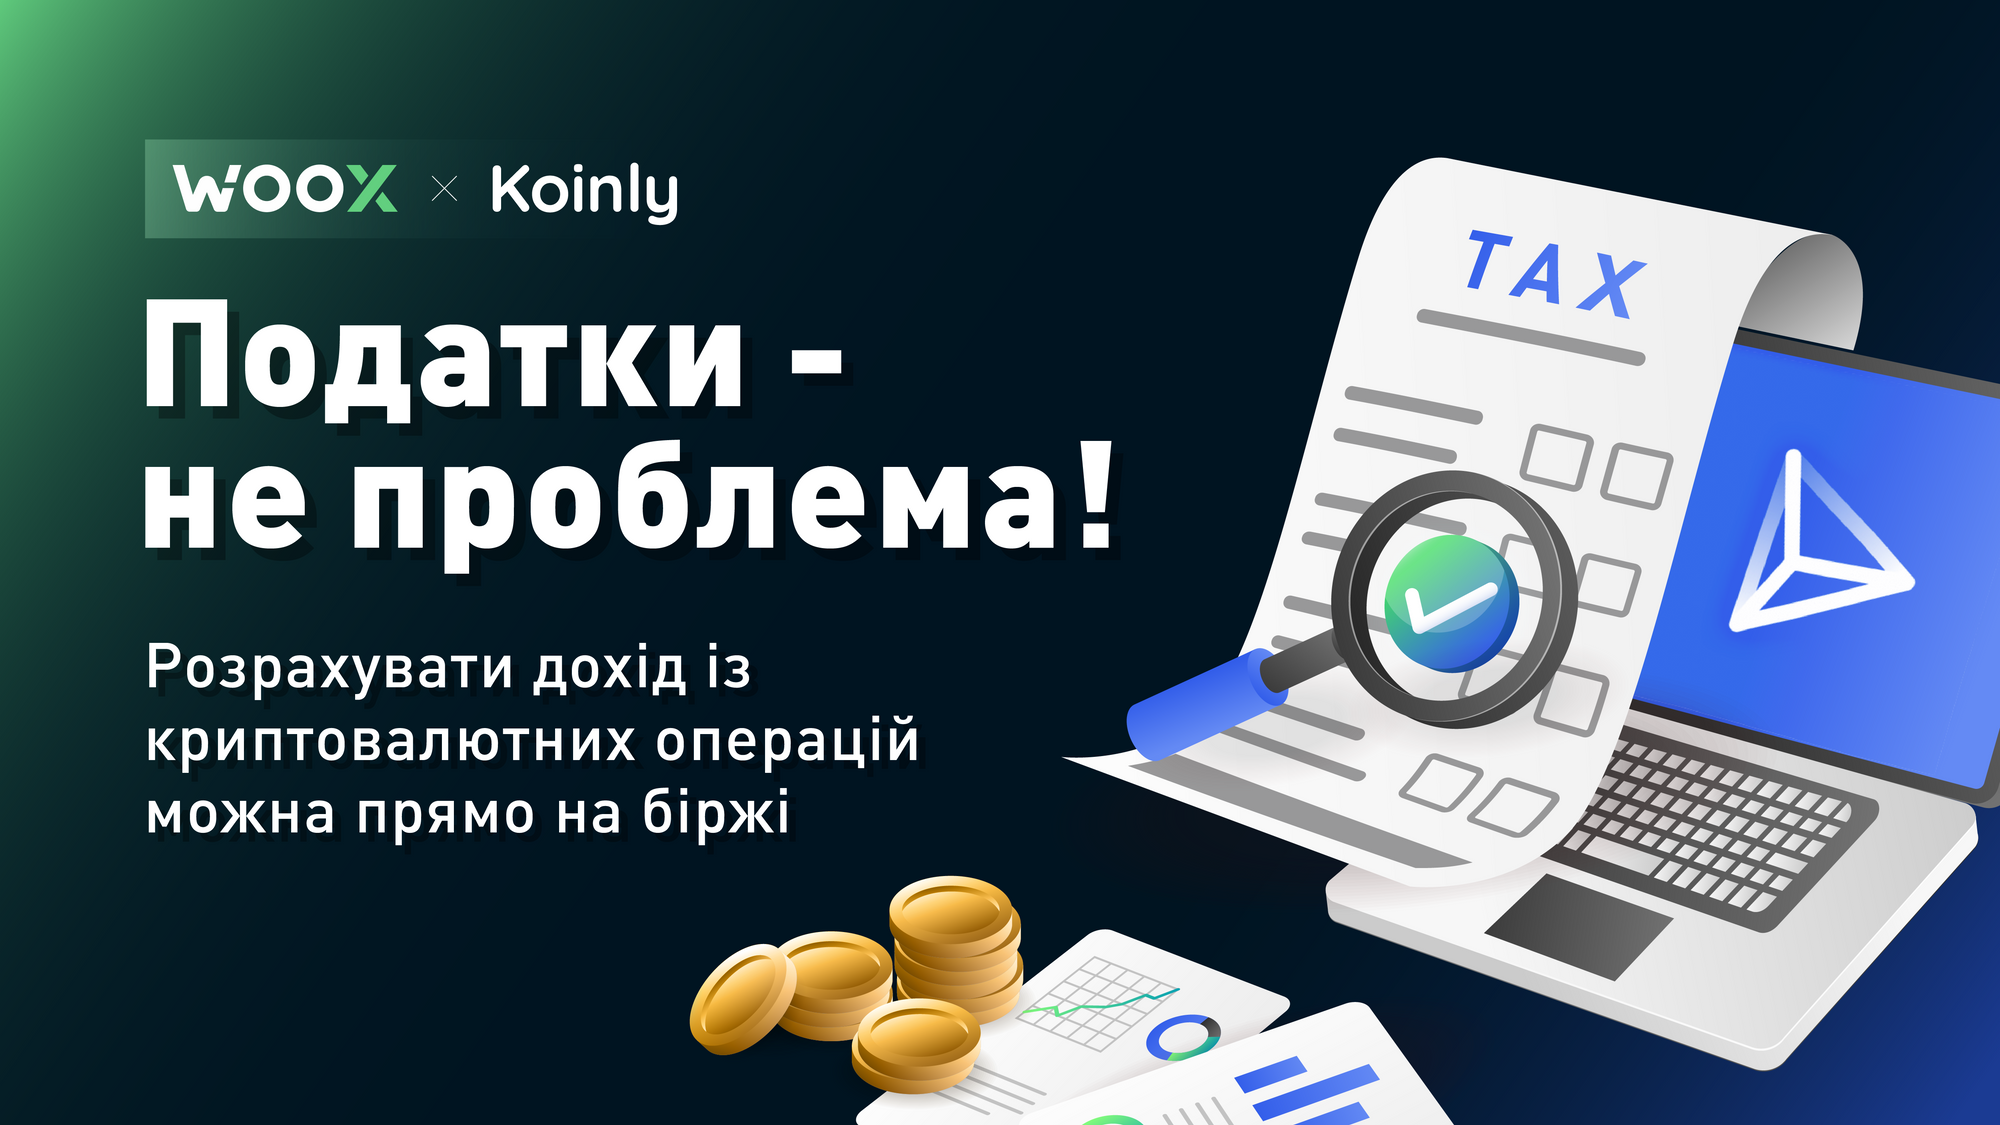 Користувачі WOO X можуть розрахувати податки на криптовалютний прибуток за допомогою Koinly